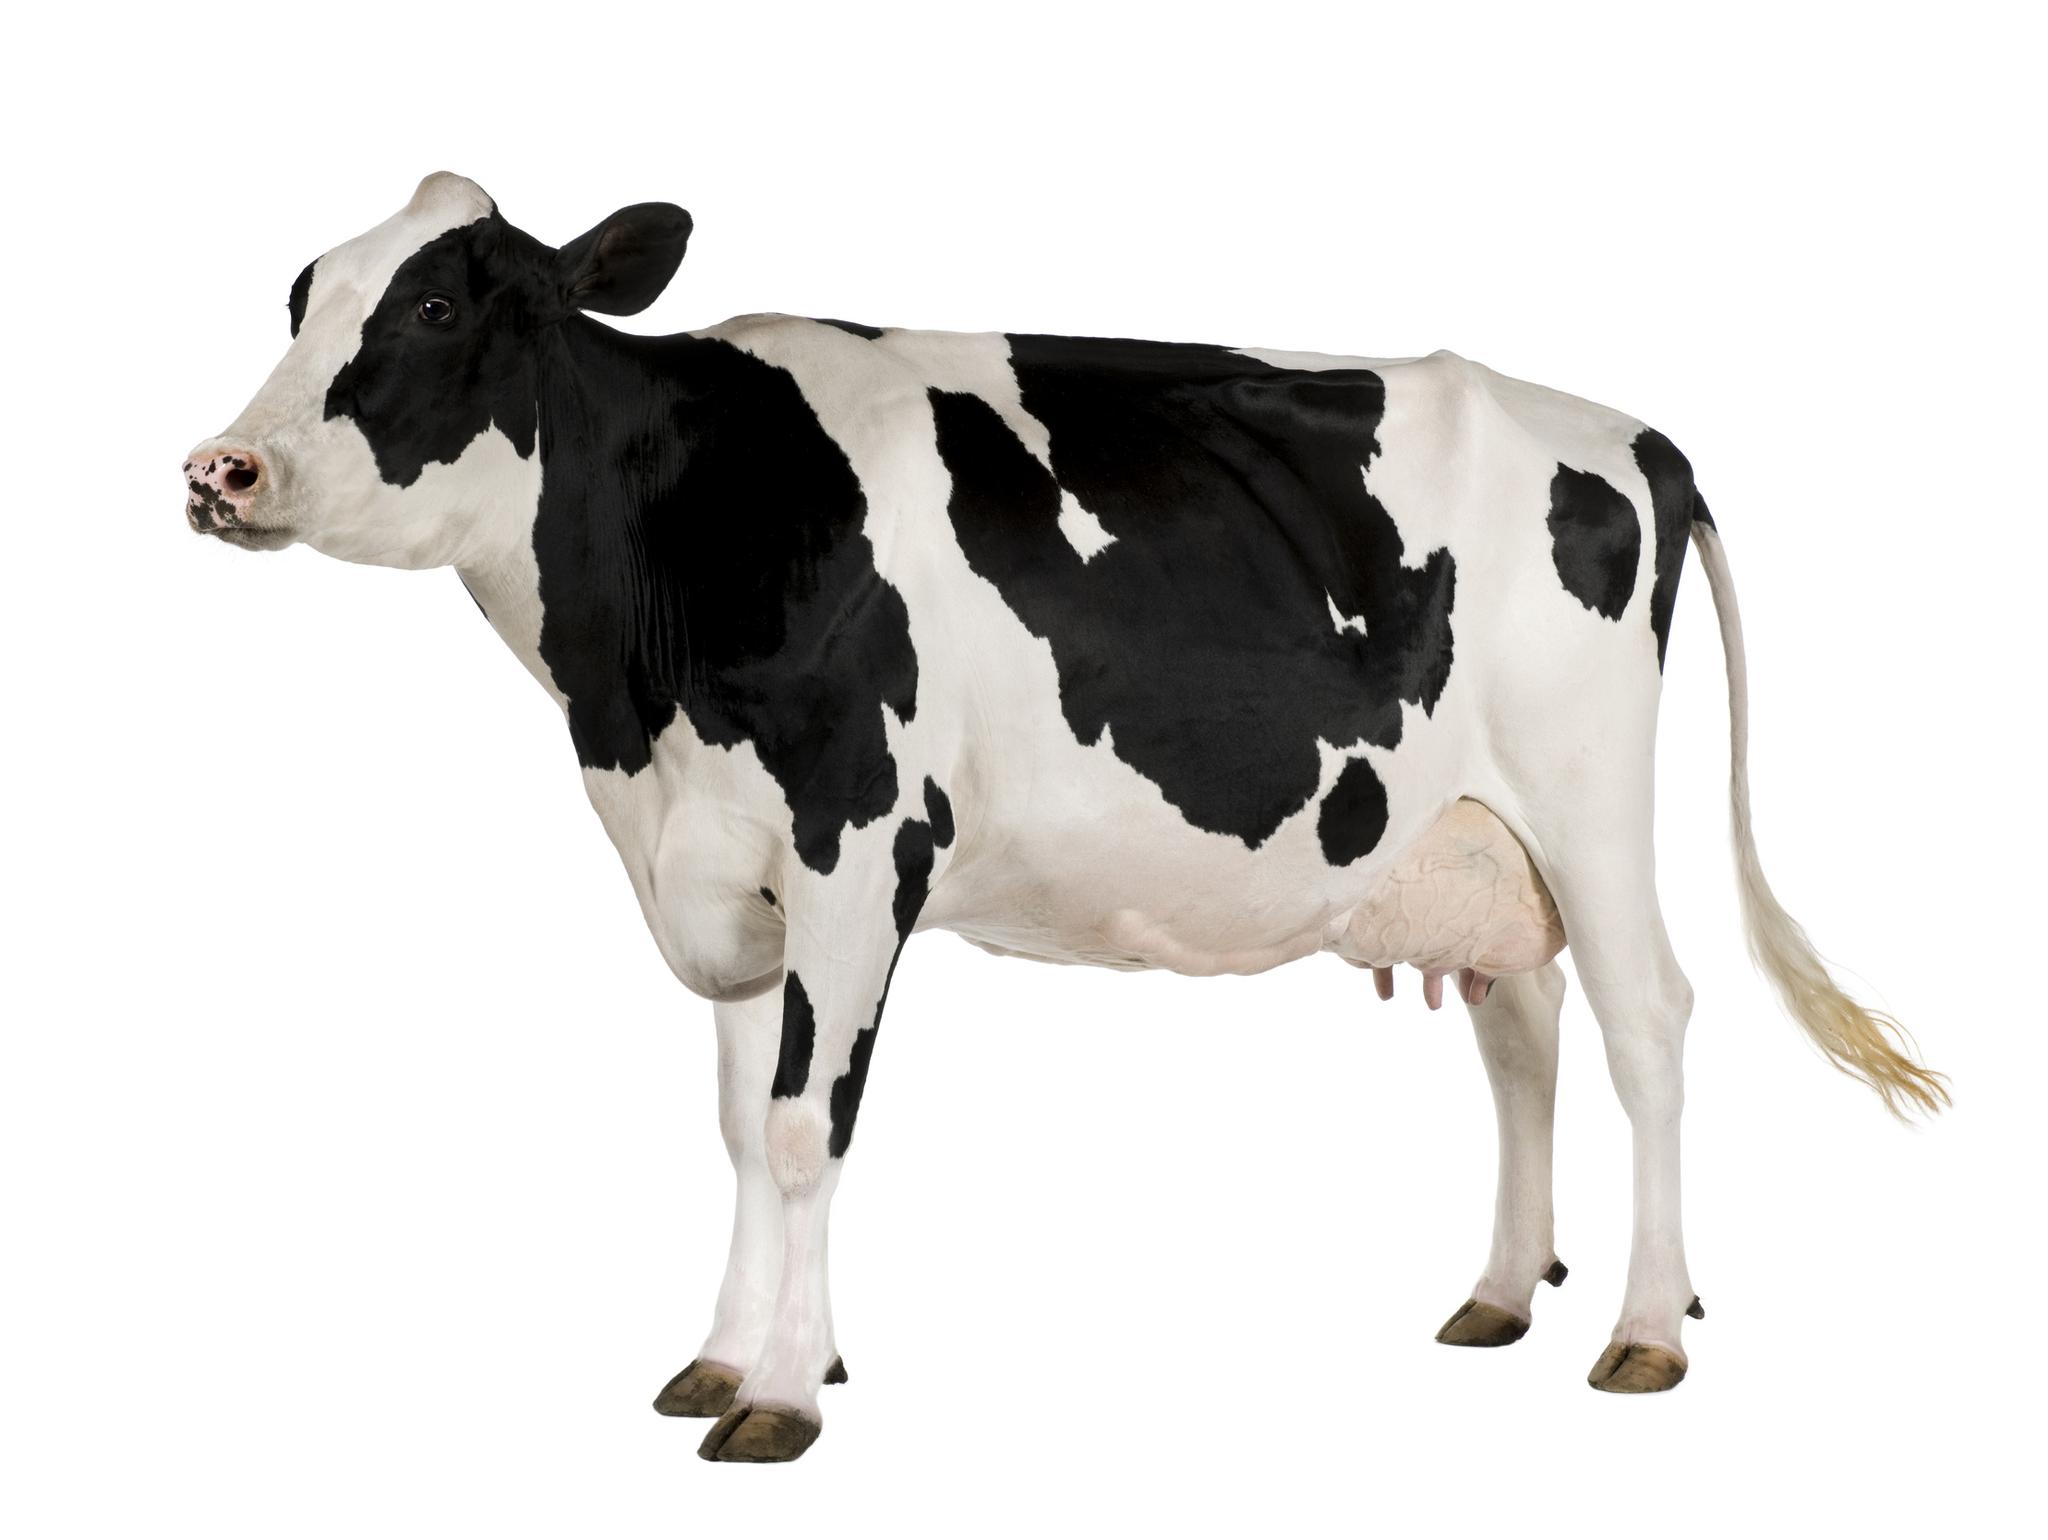 Pasturing cows of Holstein da